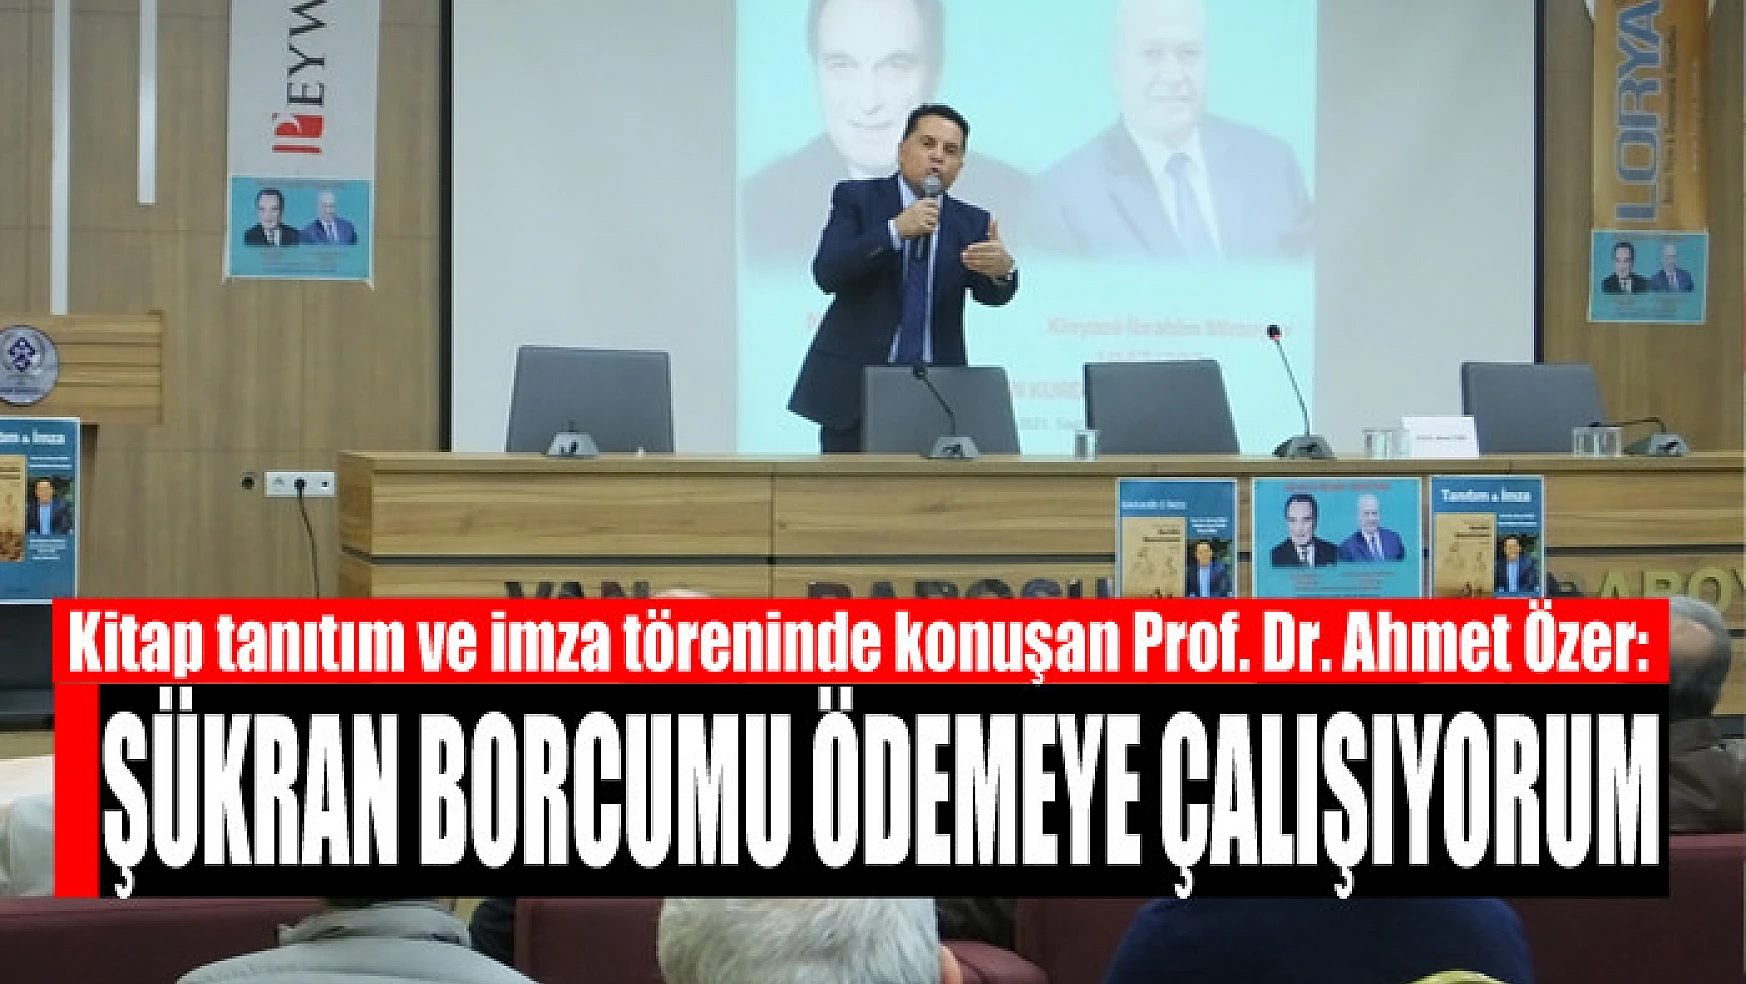 Prof. Dr. Ahmet Özer: Şükran borcumu ödemeye çalışıyorum